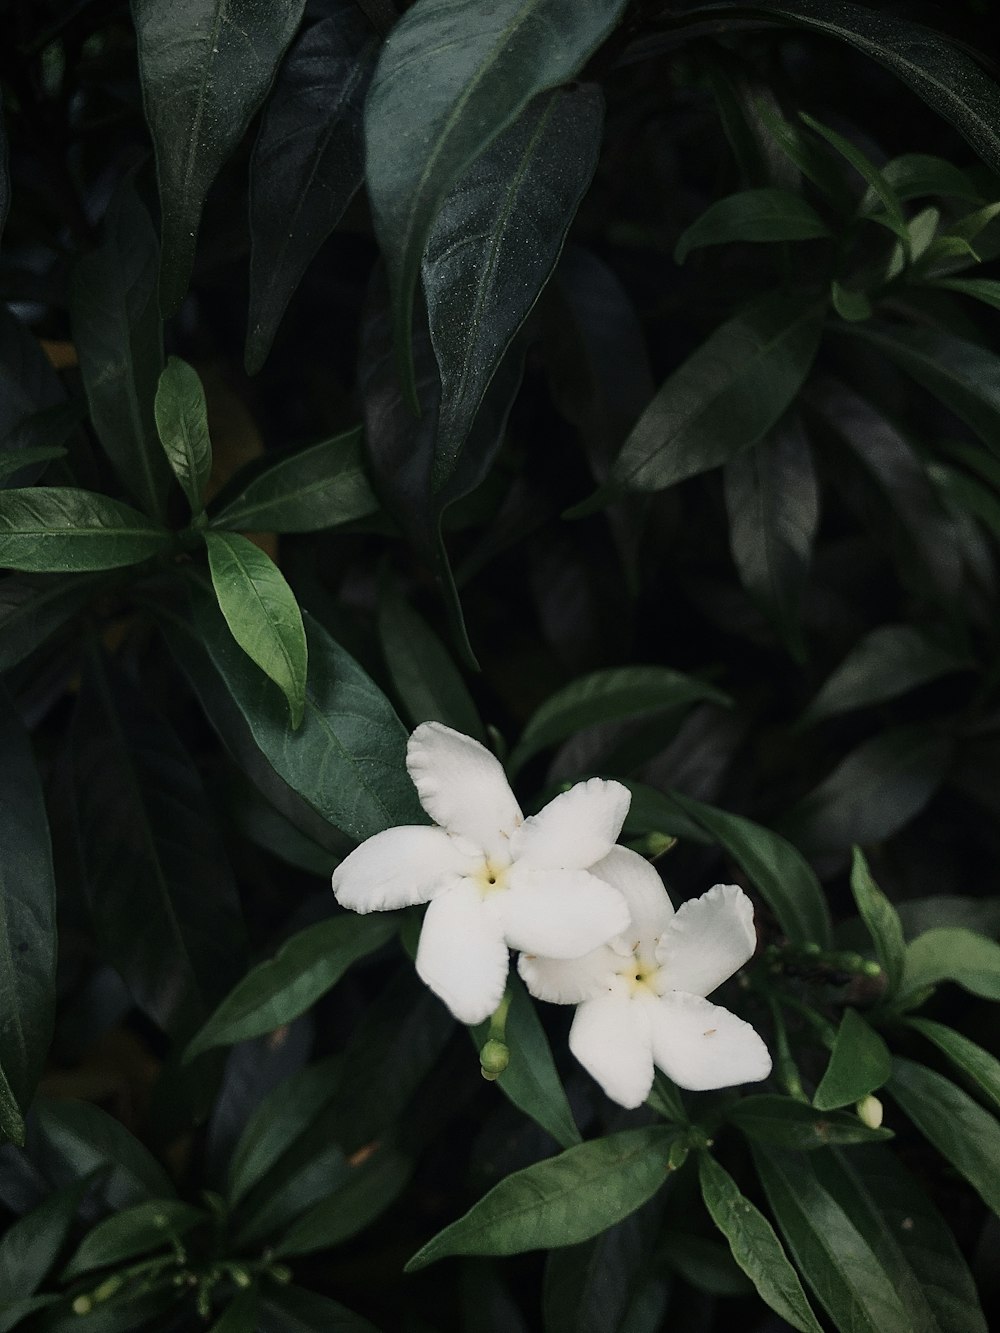 white 5 petaled flower in bloom